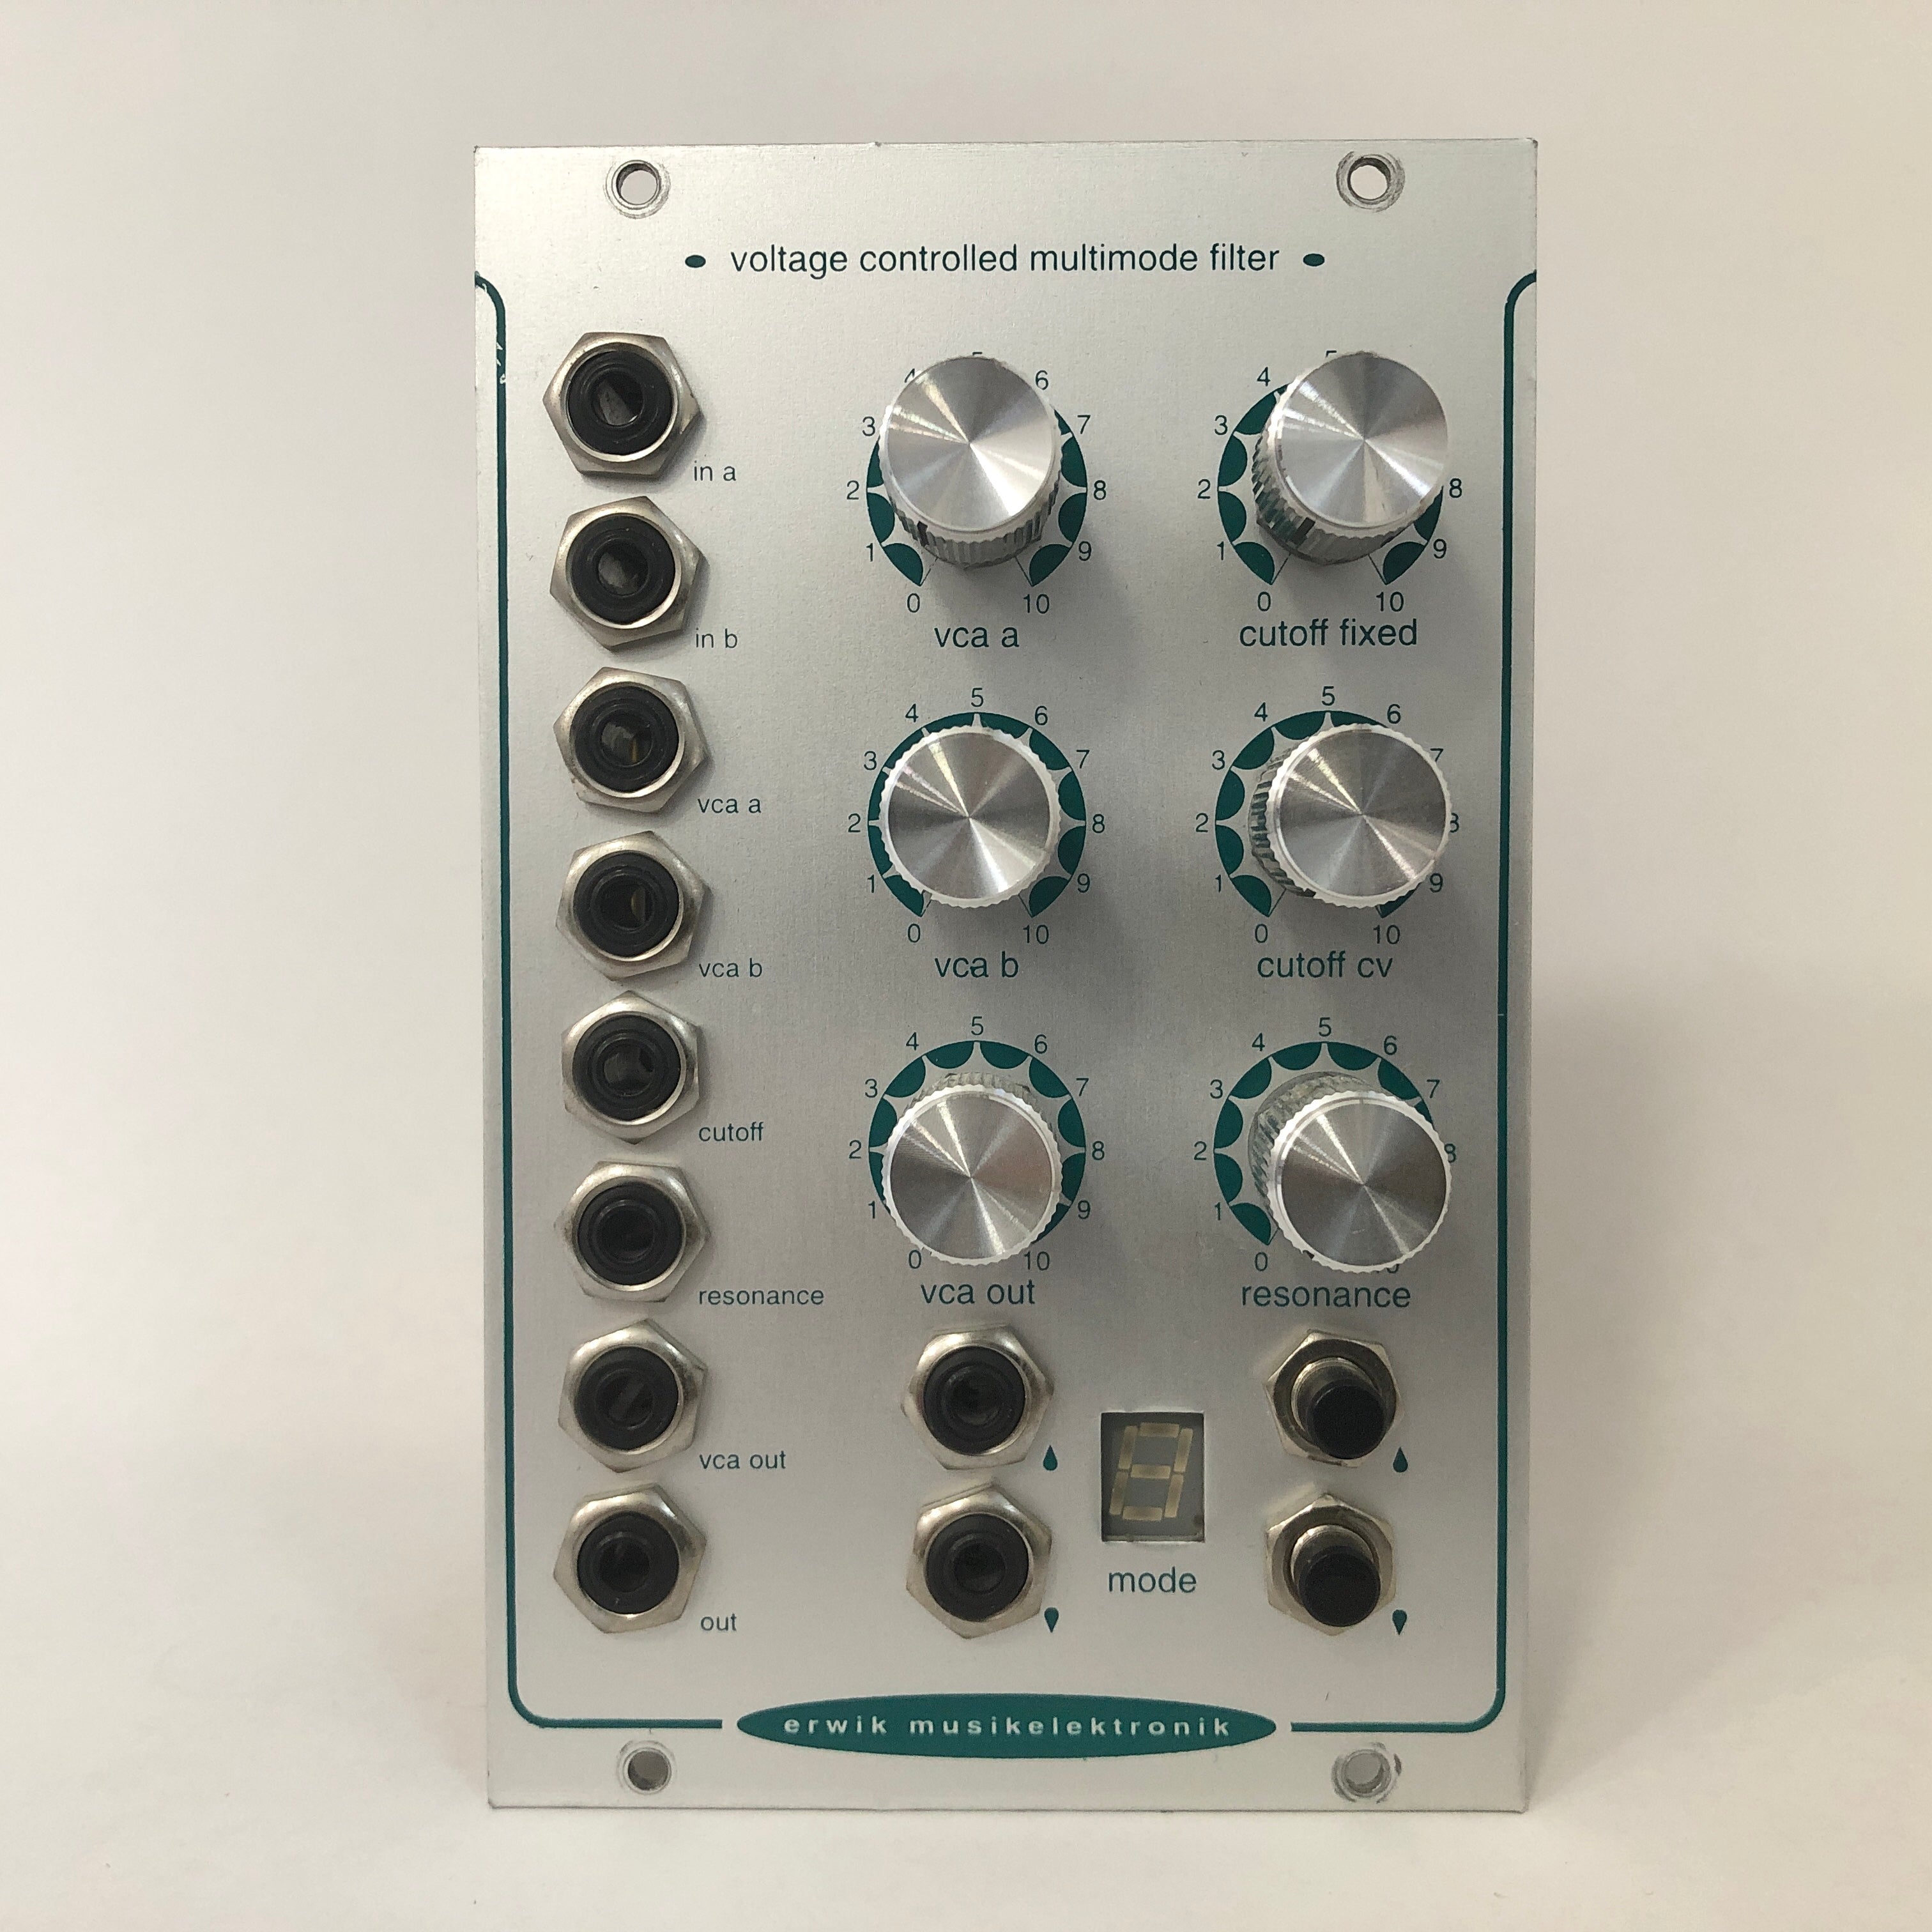 Erwik Musikelektronik Voltage Controlled Multimode Filter